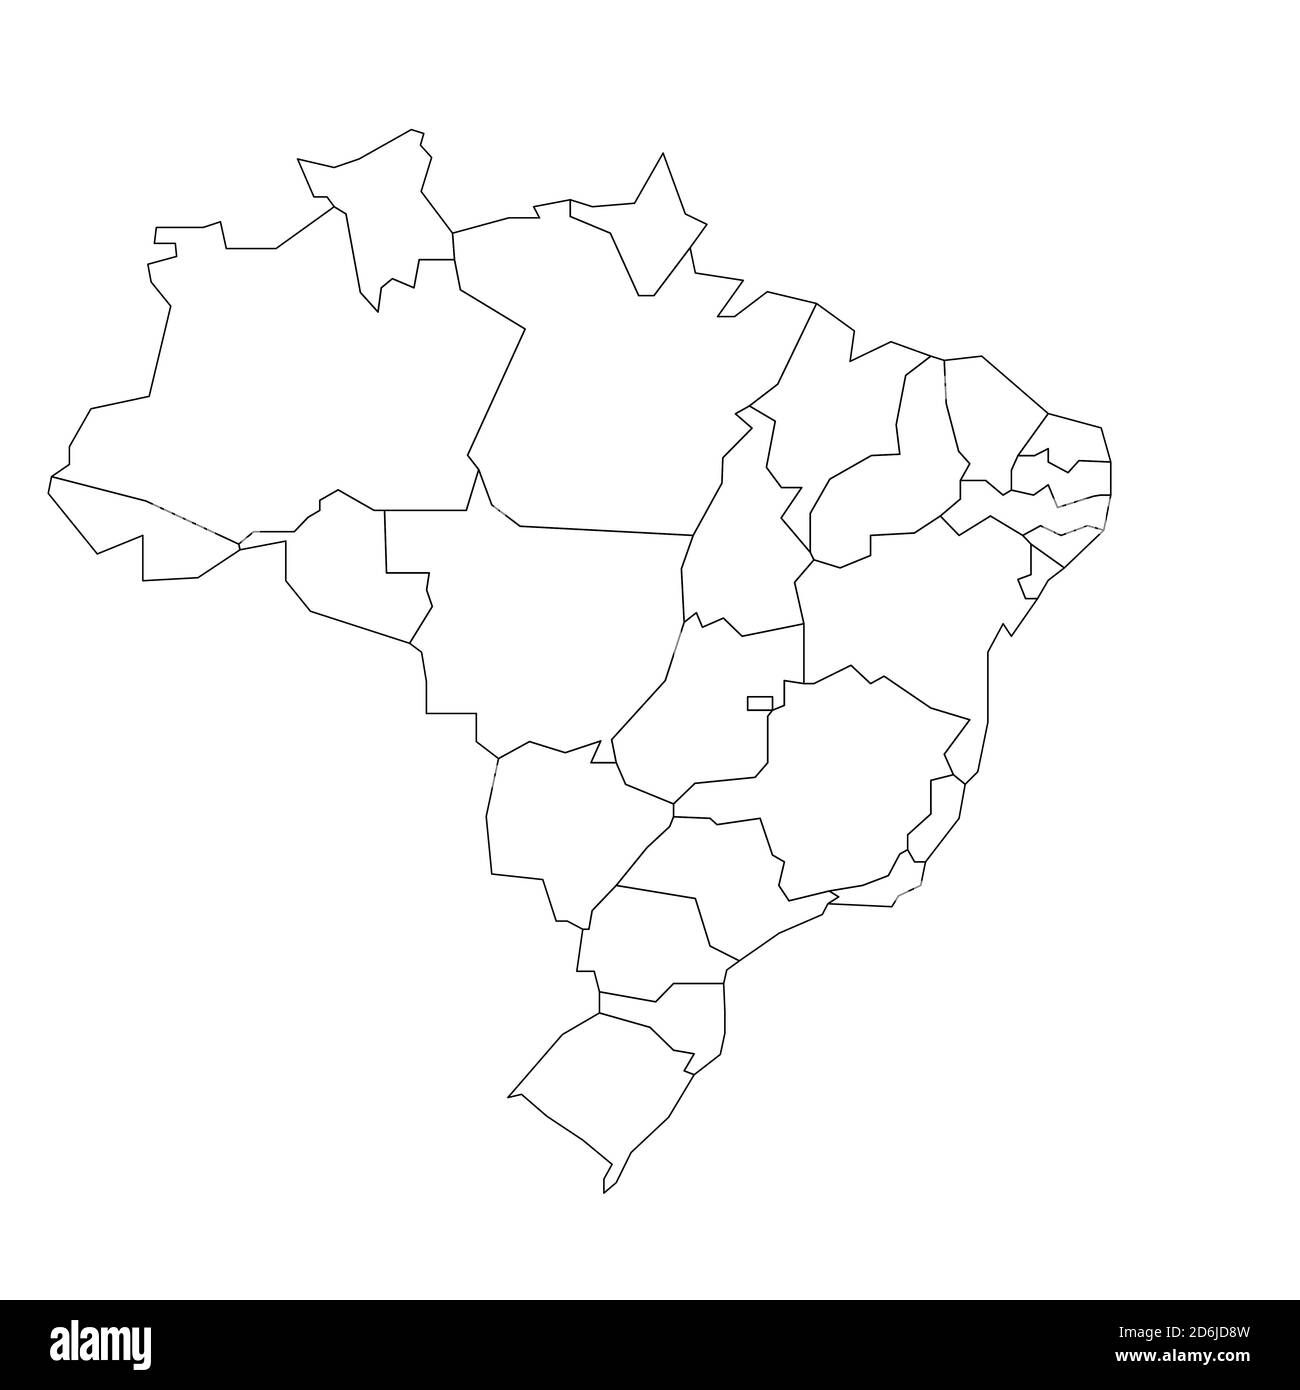 Leere politische Landkarte von Brasilien. Verwaltungsabteilungen - Staaten. Einfache schwarze Umrisskarte. Stock Vektor